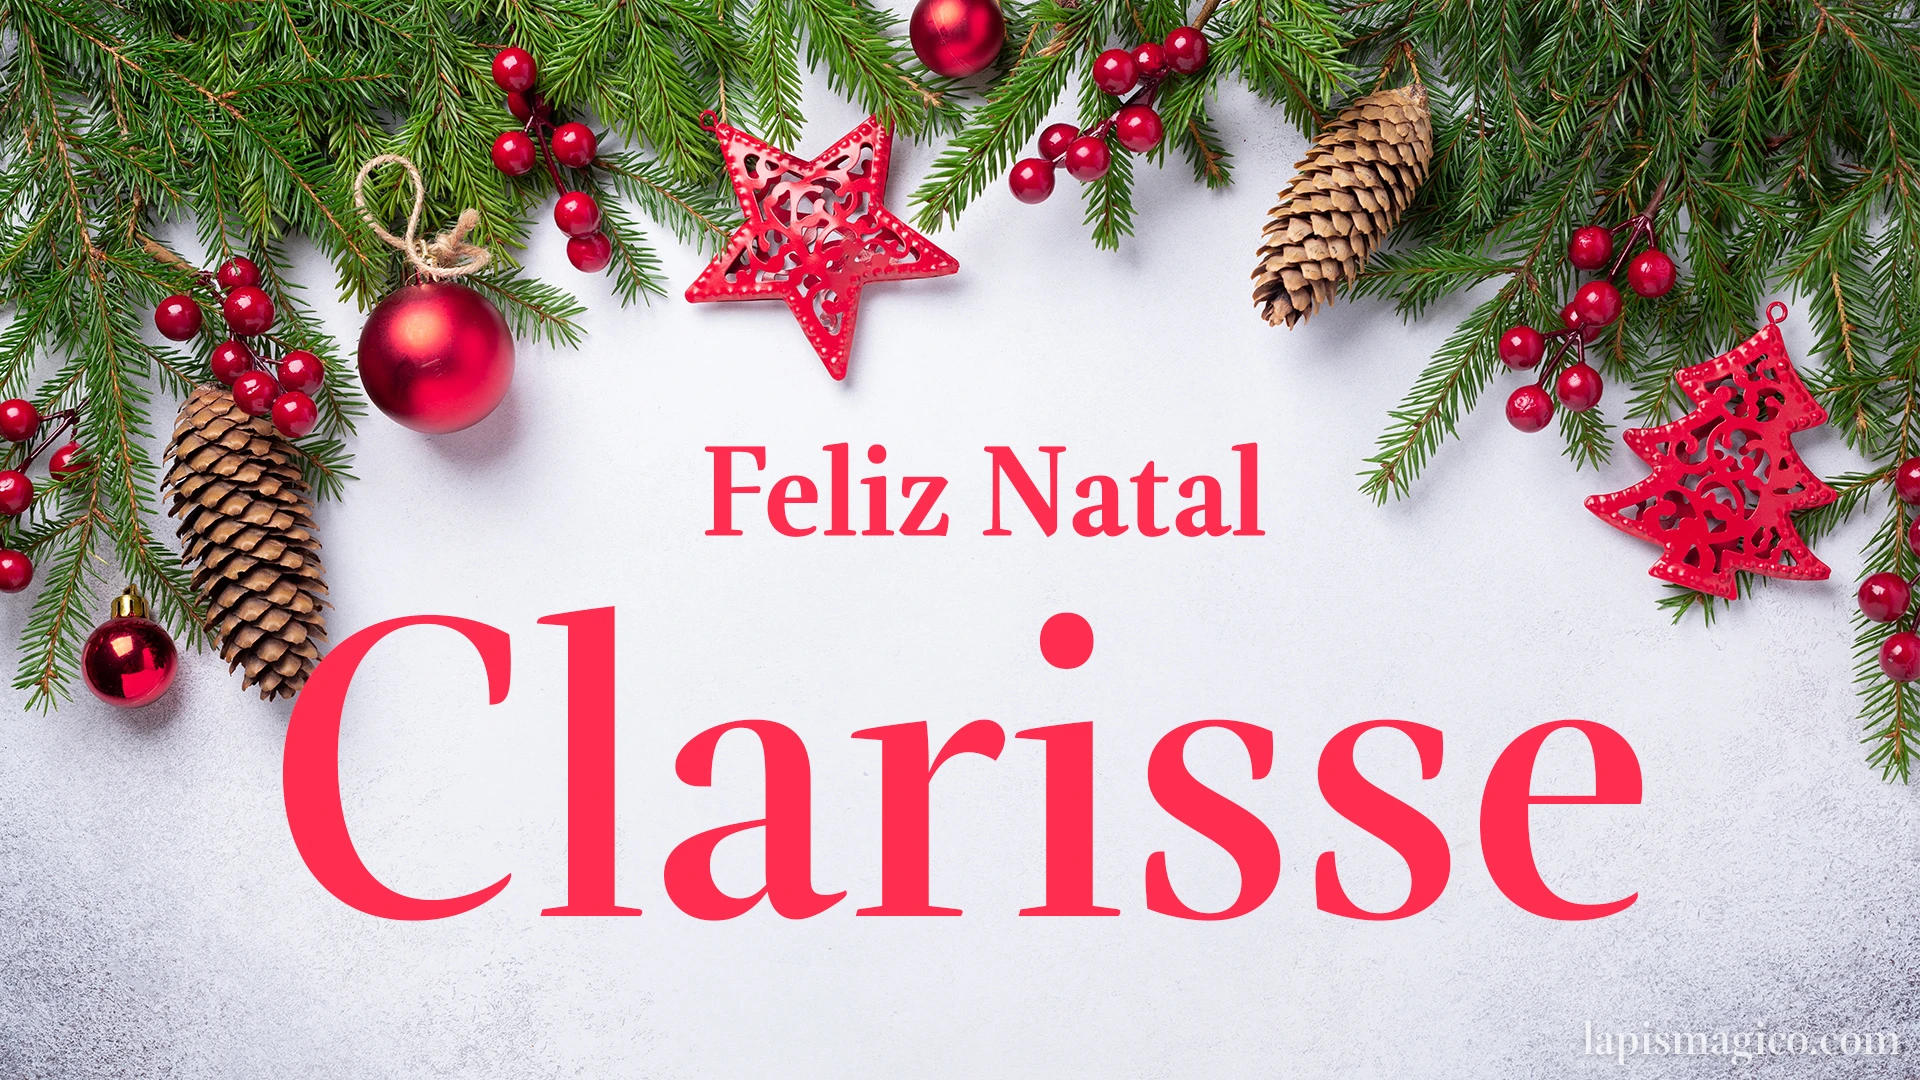 Oh Clarisse, cinco postais de Feliz Natal Postal com o teu nome